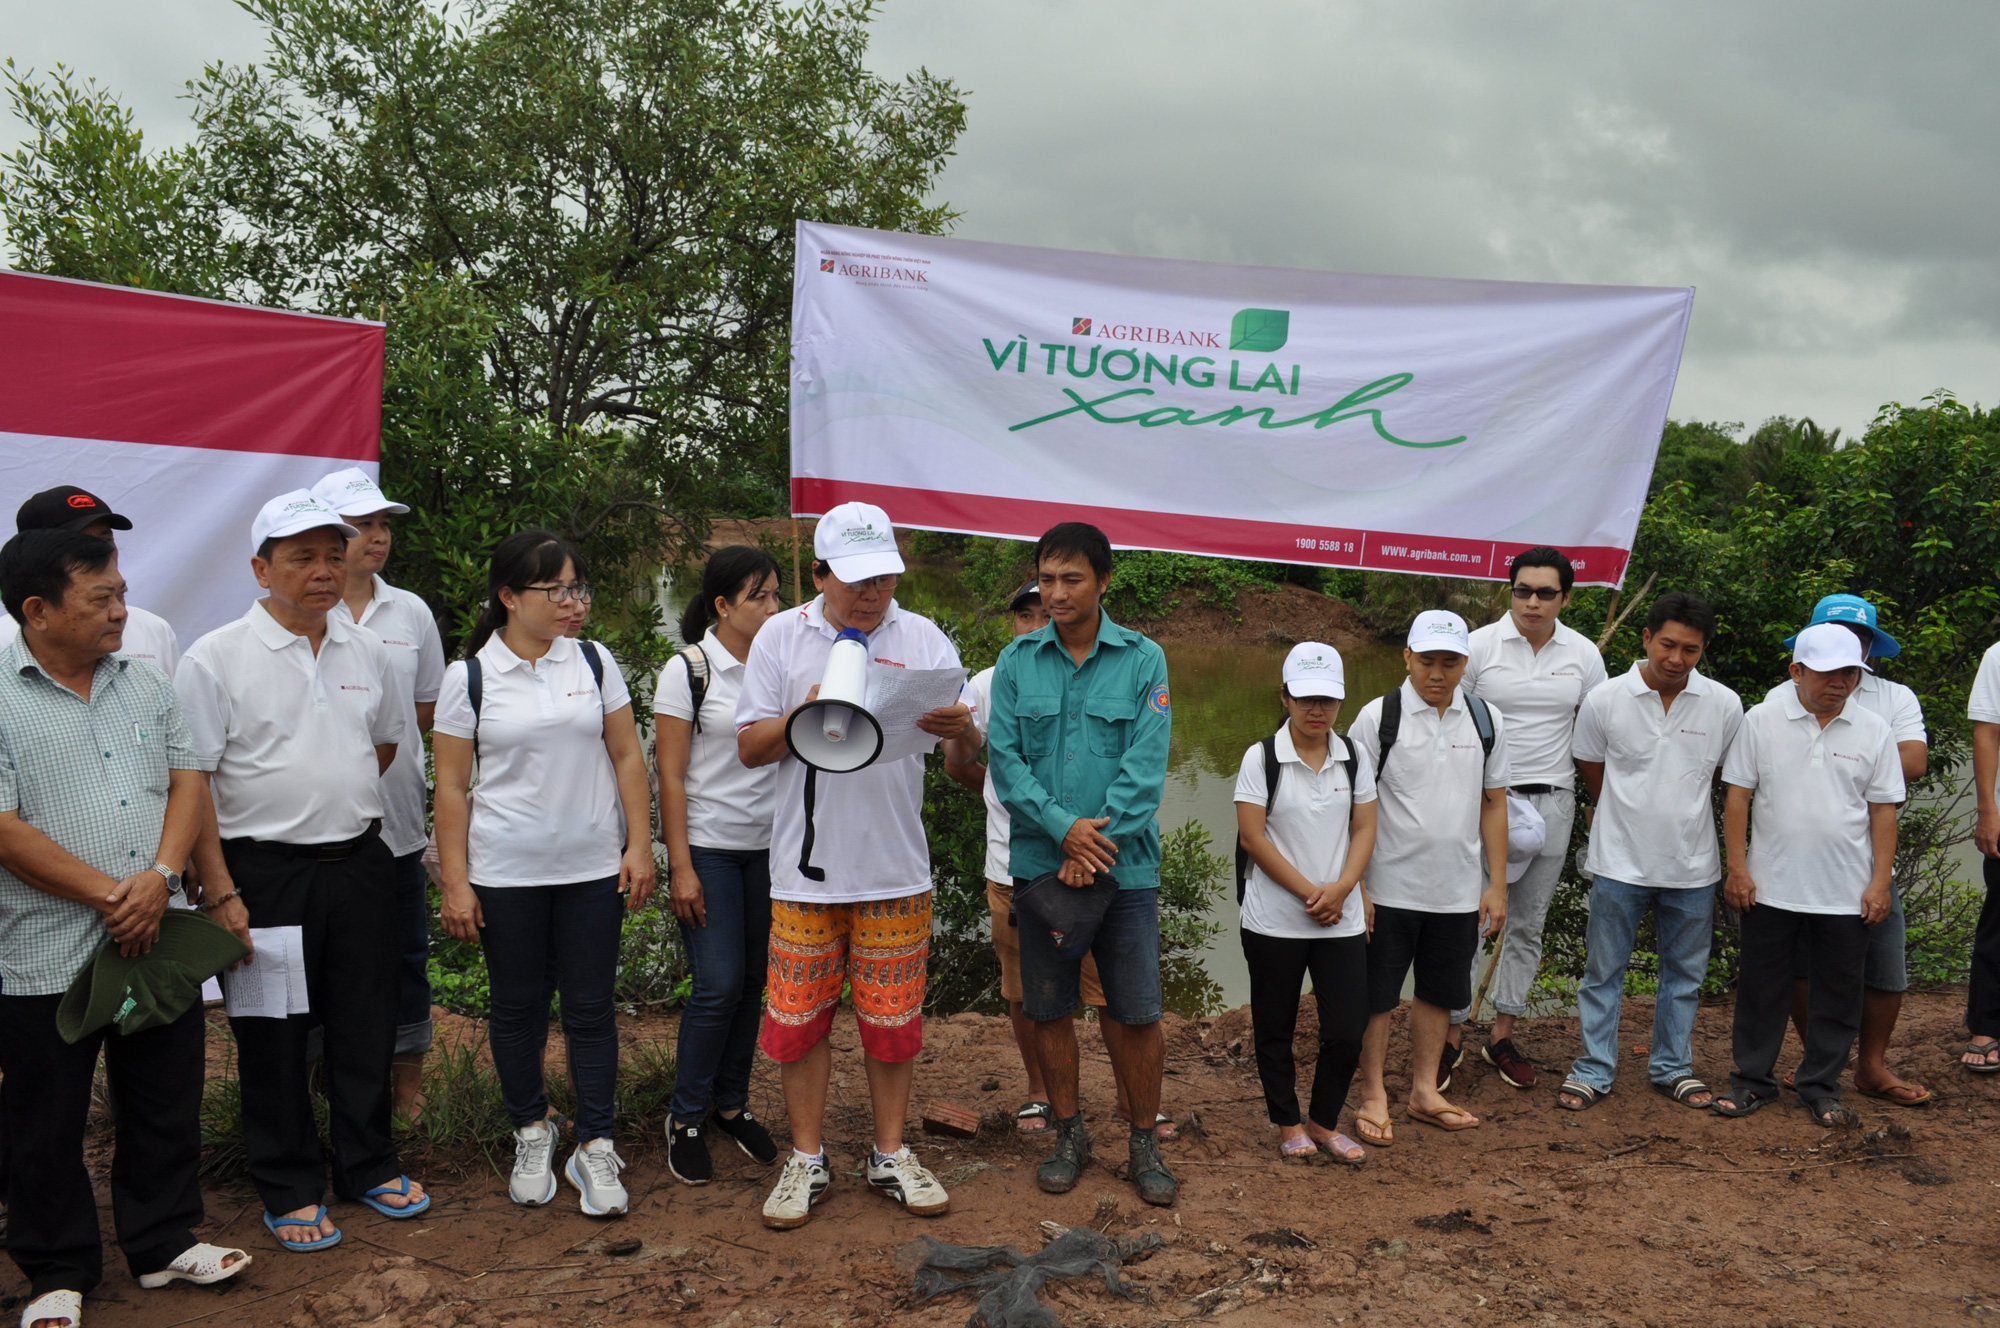 Agribank Chi nhánh Trà Vinh trồng mới 1.700 cây xanh khu vực rừng phòng hộ ven biển  - Ảnh 1.